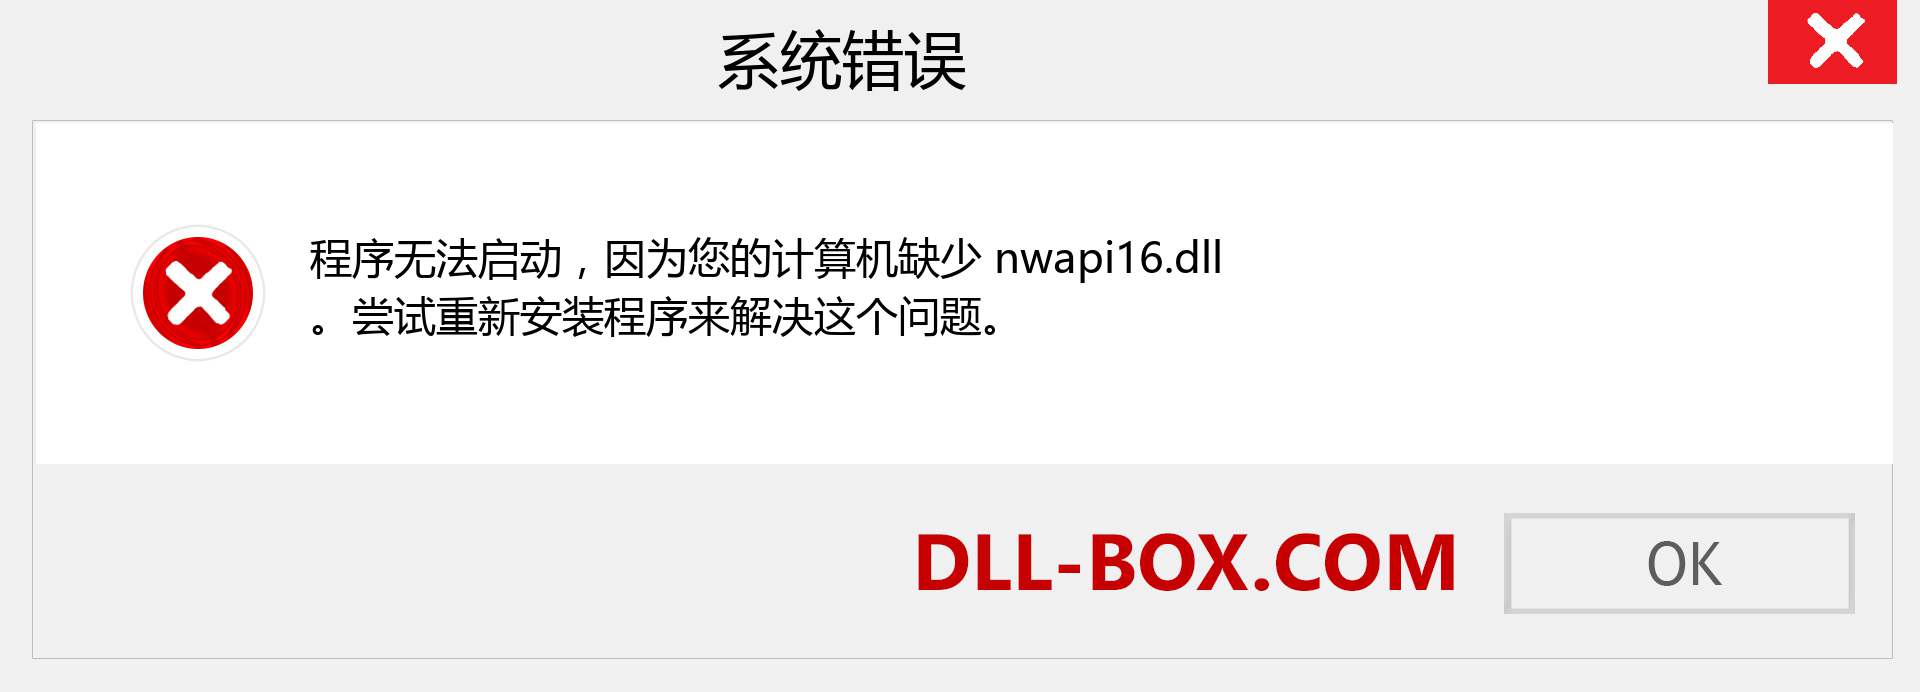 nwapi16.dll 文件丢失？。 适用于 Windows 7、8、10 的下载 - 修复 Windows、照片、图像上的 nwapi16 dll 丢失错误